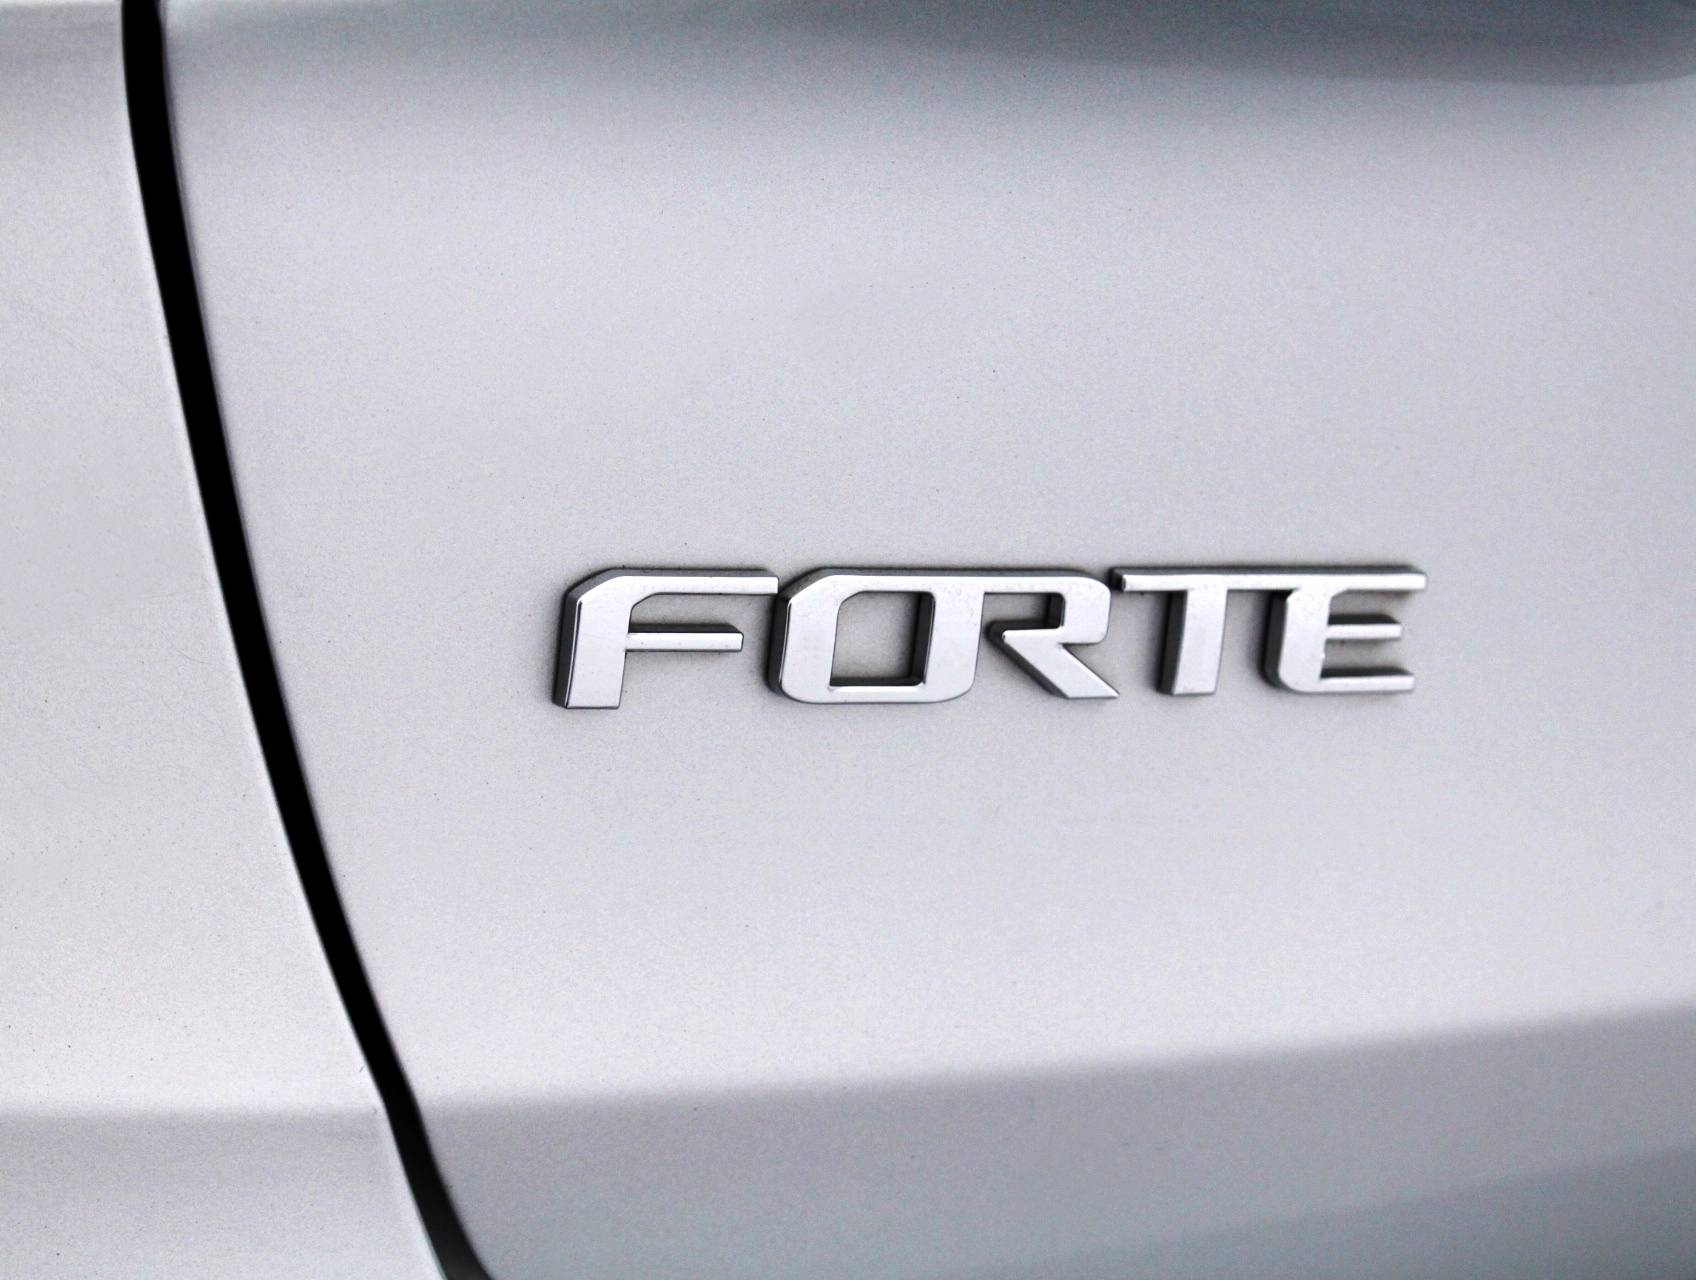 Florida Fine Cars - Used KIA FORTE 2016 MARGATE LX